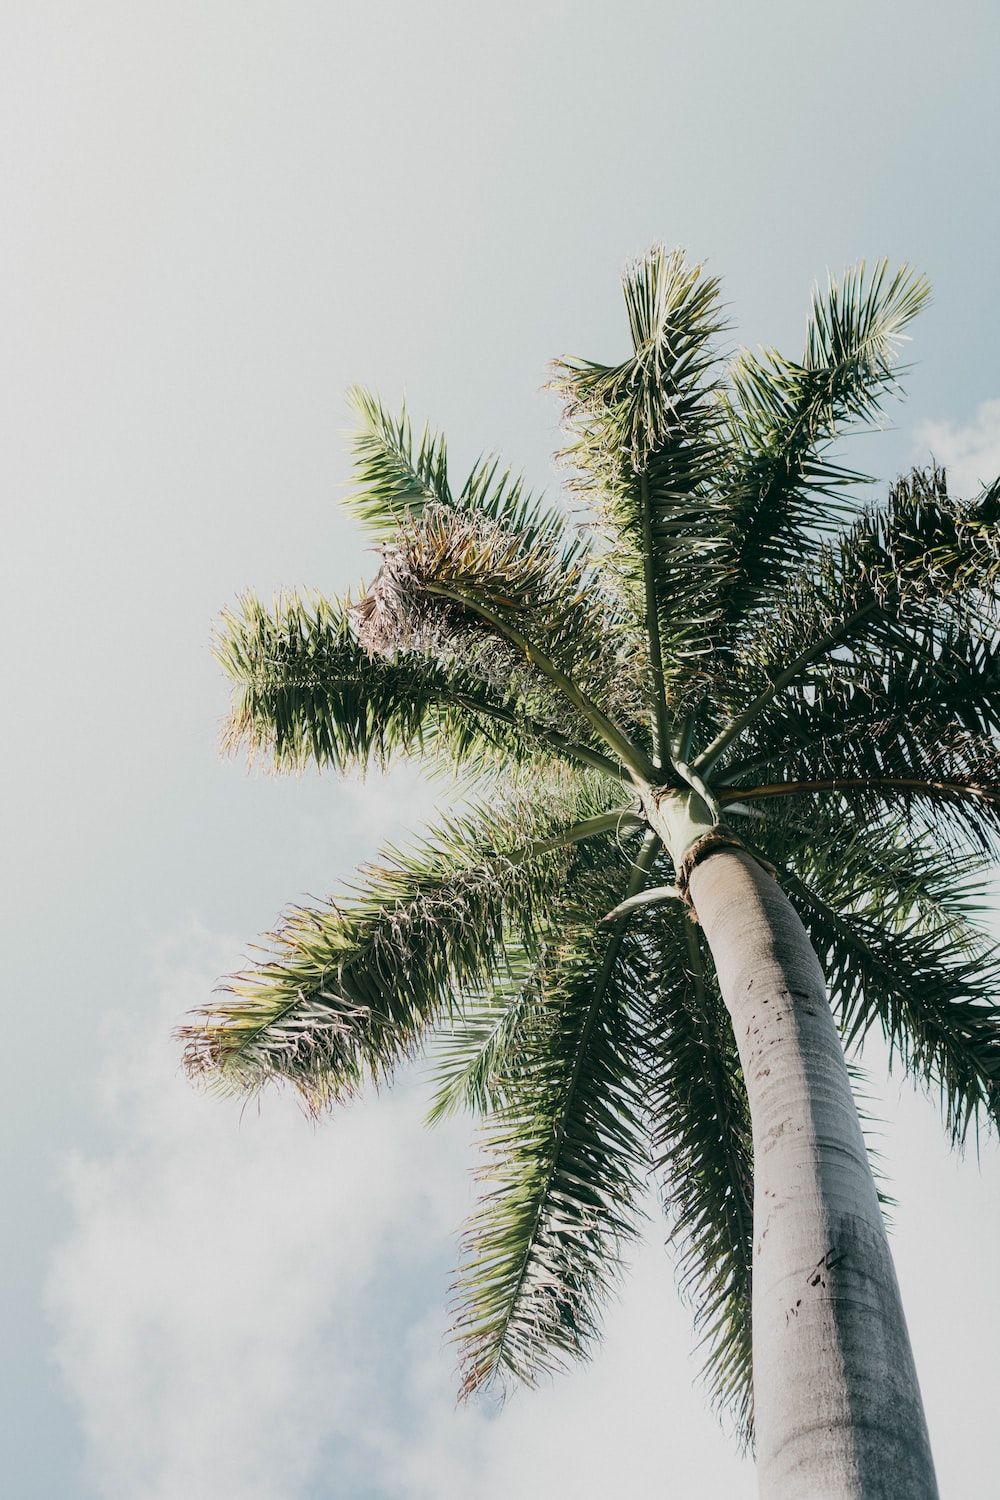 A palm tree against a blue sky - Palm tree